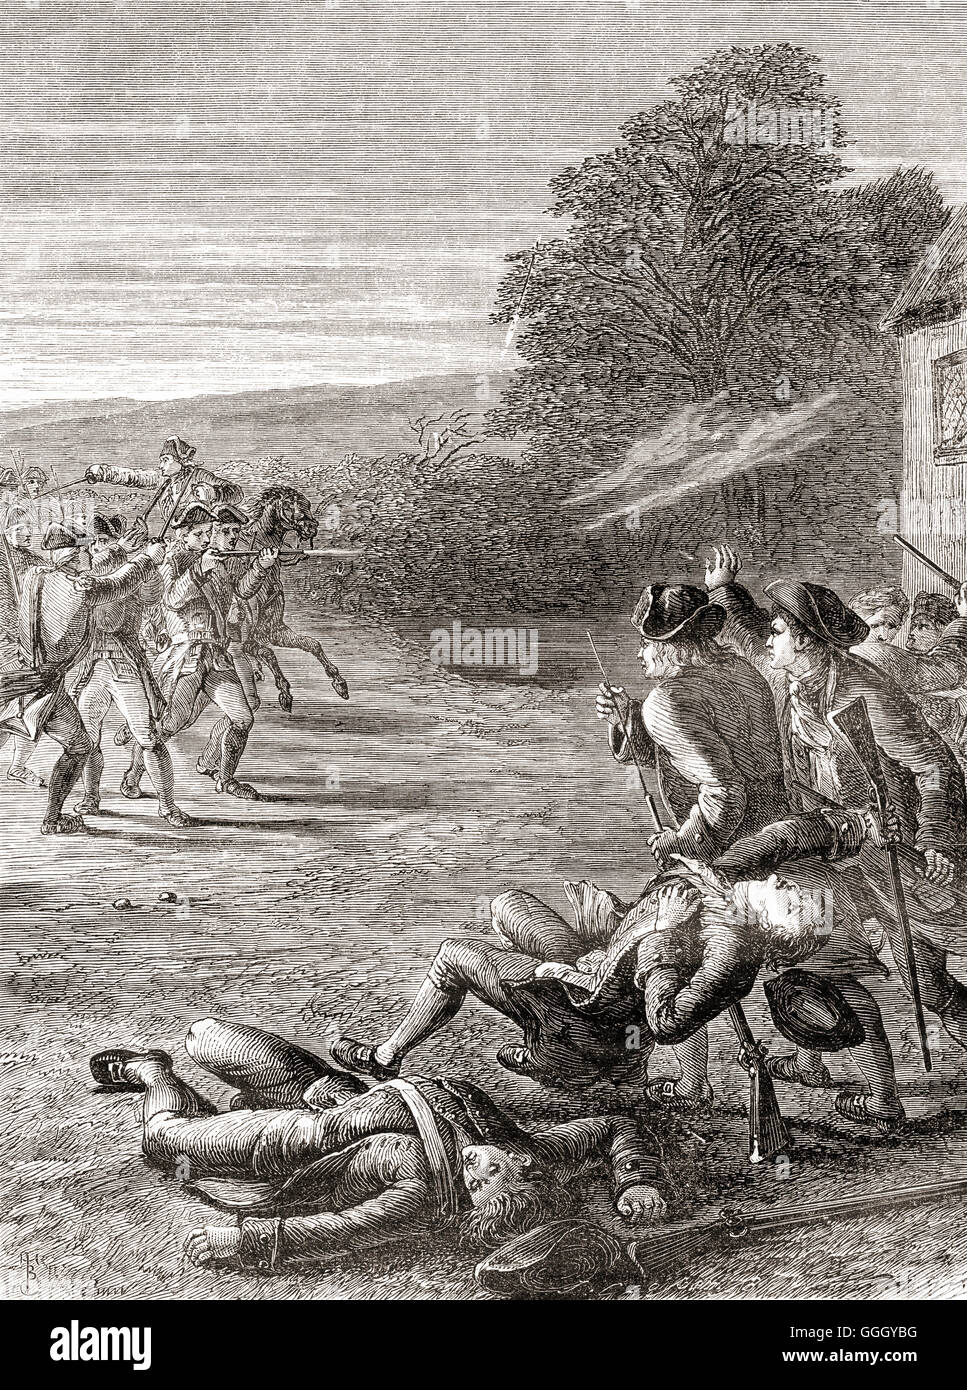 La scaramuccia a Lexington Green, Massachusetts, Stati Uniti d'America, 19 aprile 1775, i primi impegni militari della guerra rivoluzionaria americana. Foto Stock